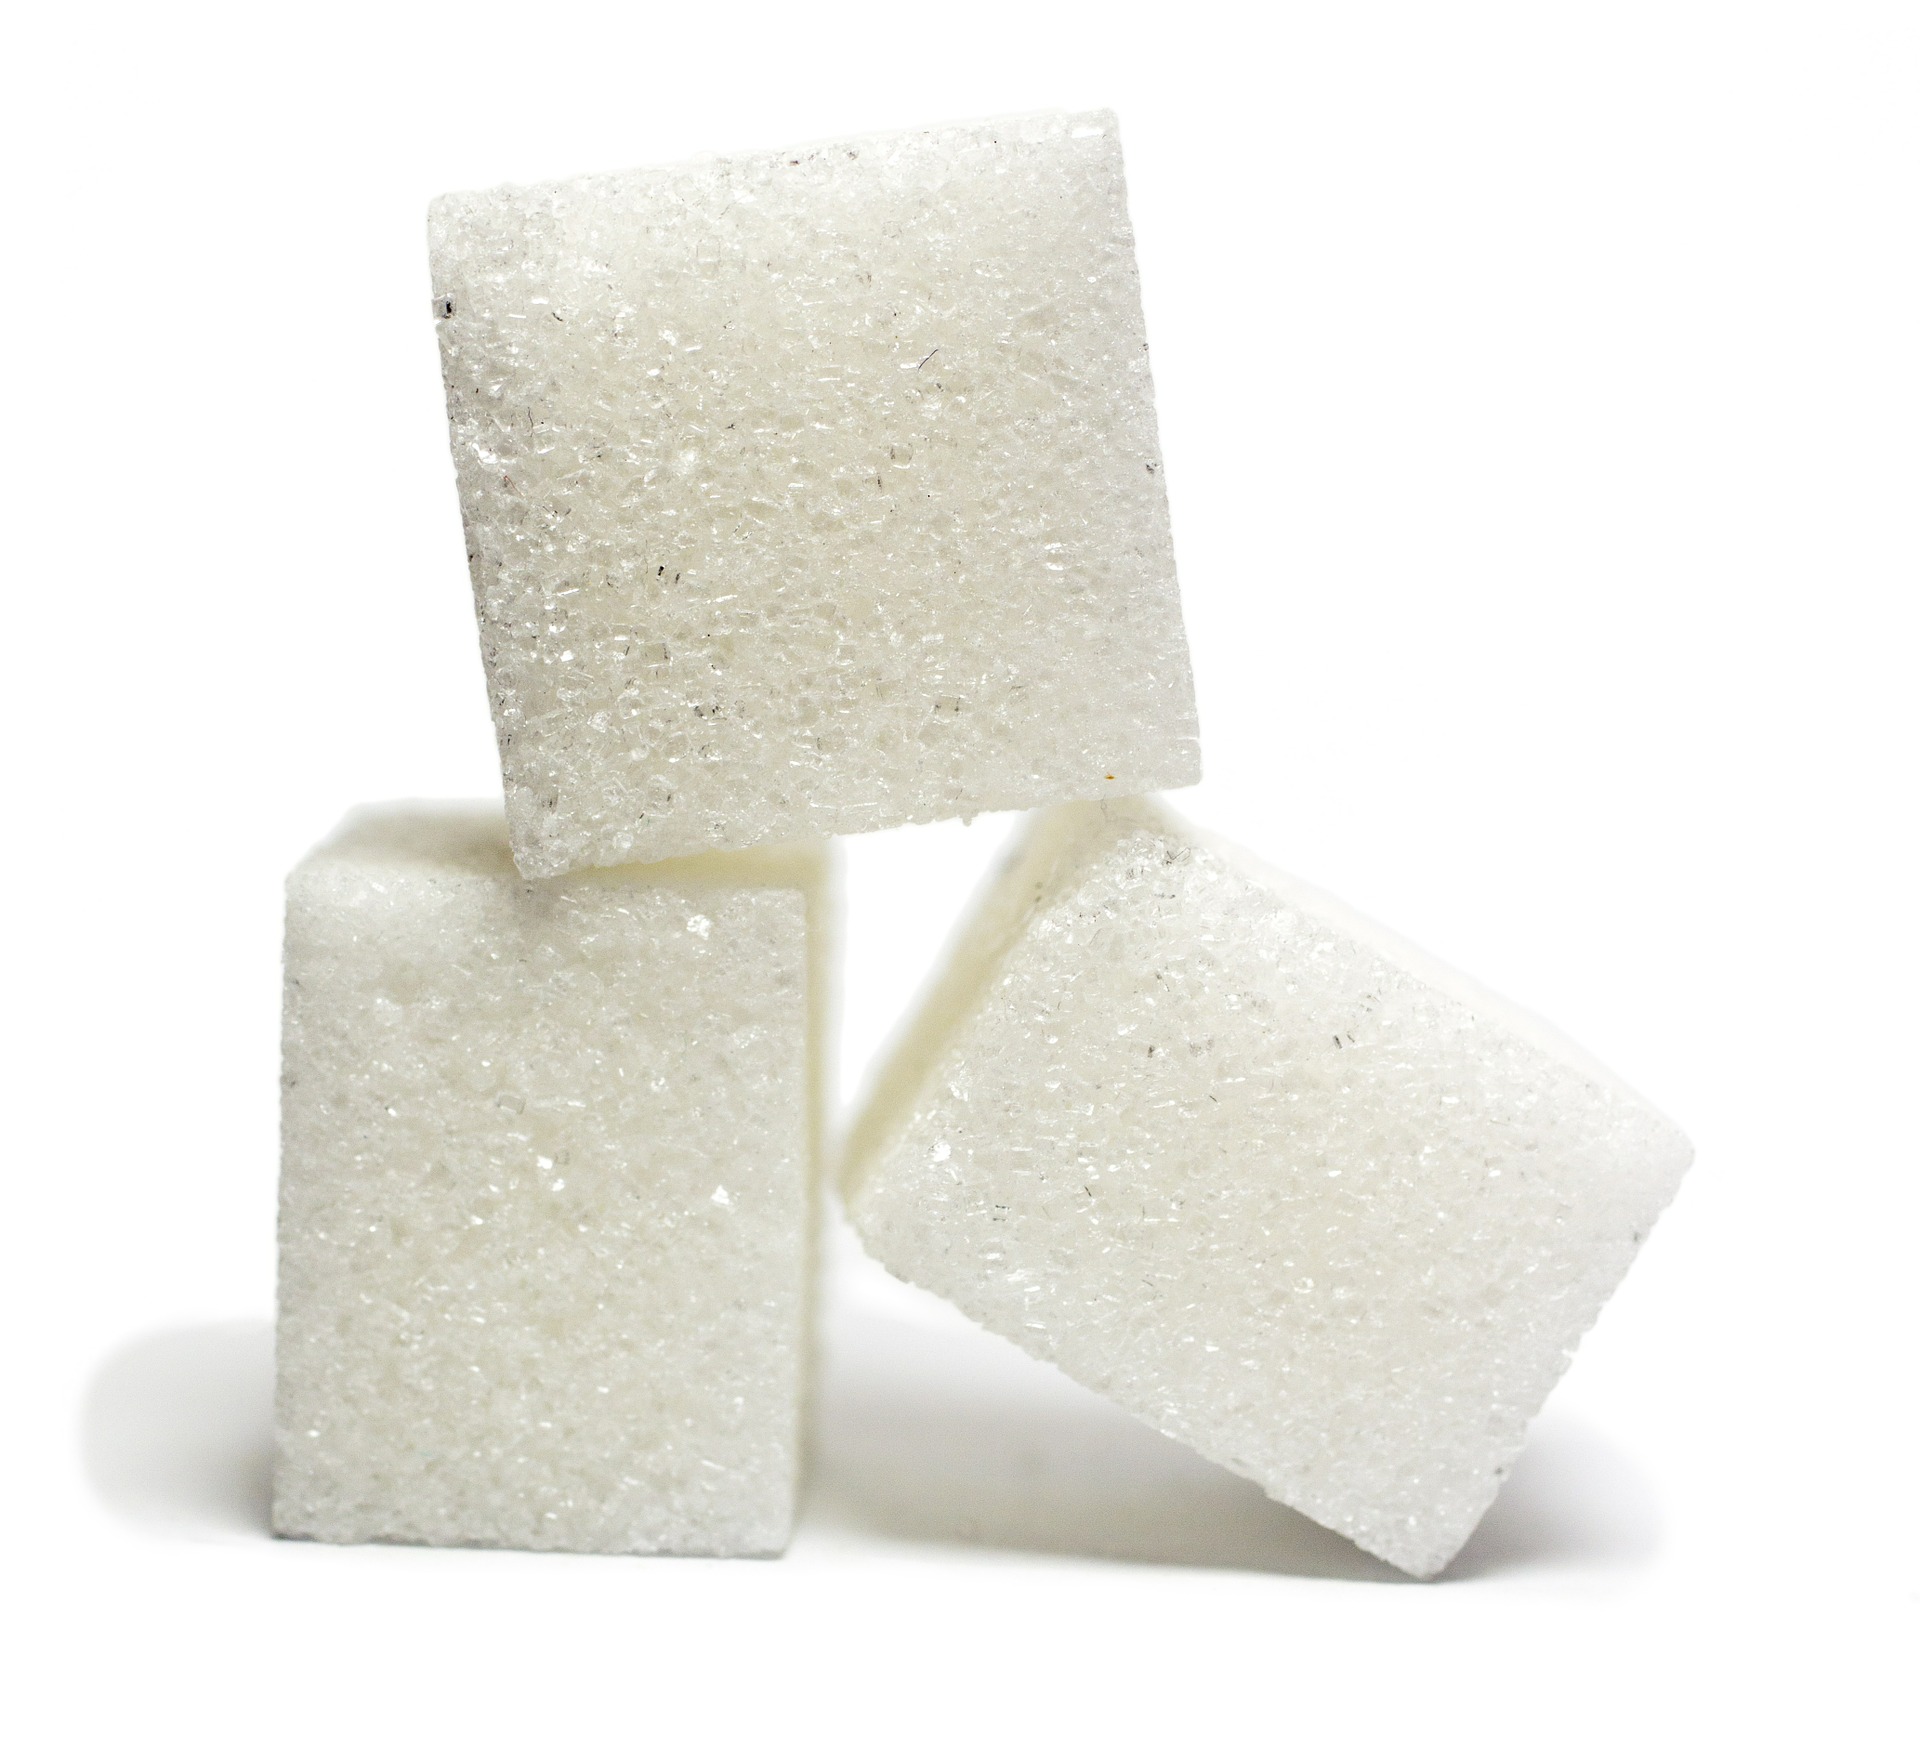 Com usinas mais flexíveis, preços do açúcar recuam